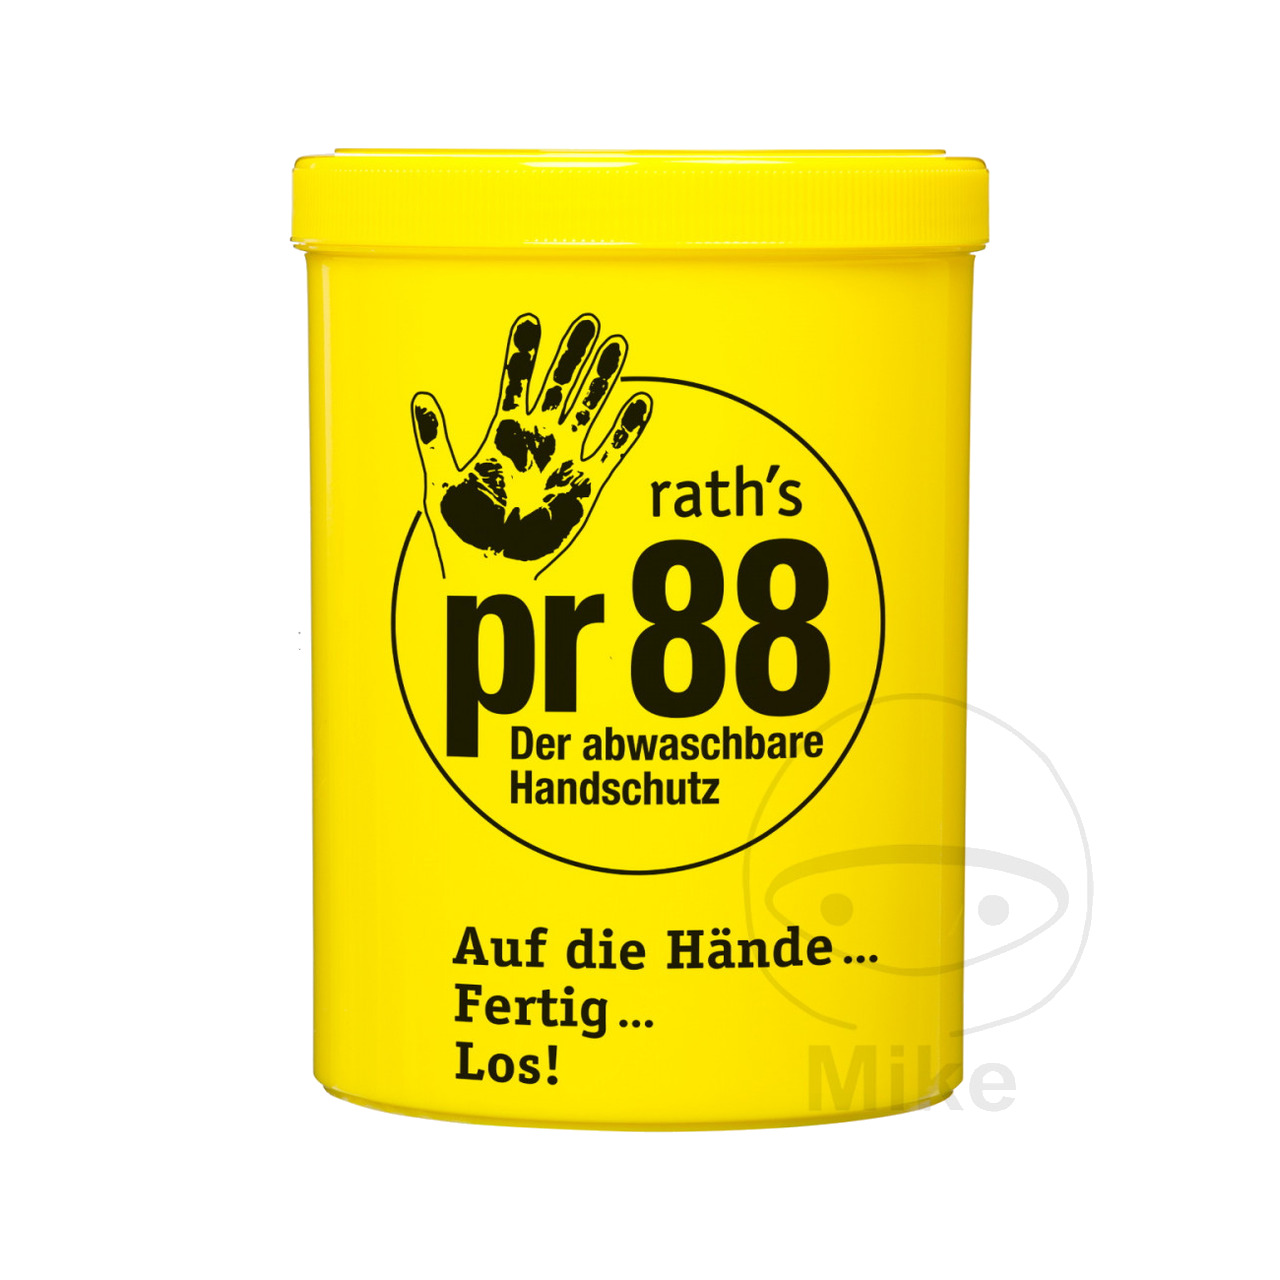 RATH'S crema mani protettiva PR 88 1 L - Foto 1 di 1